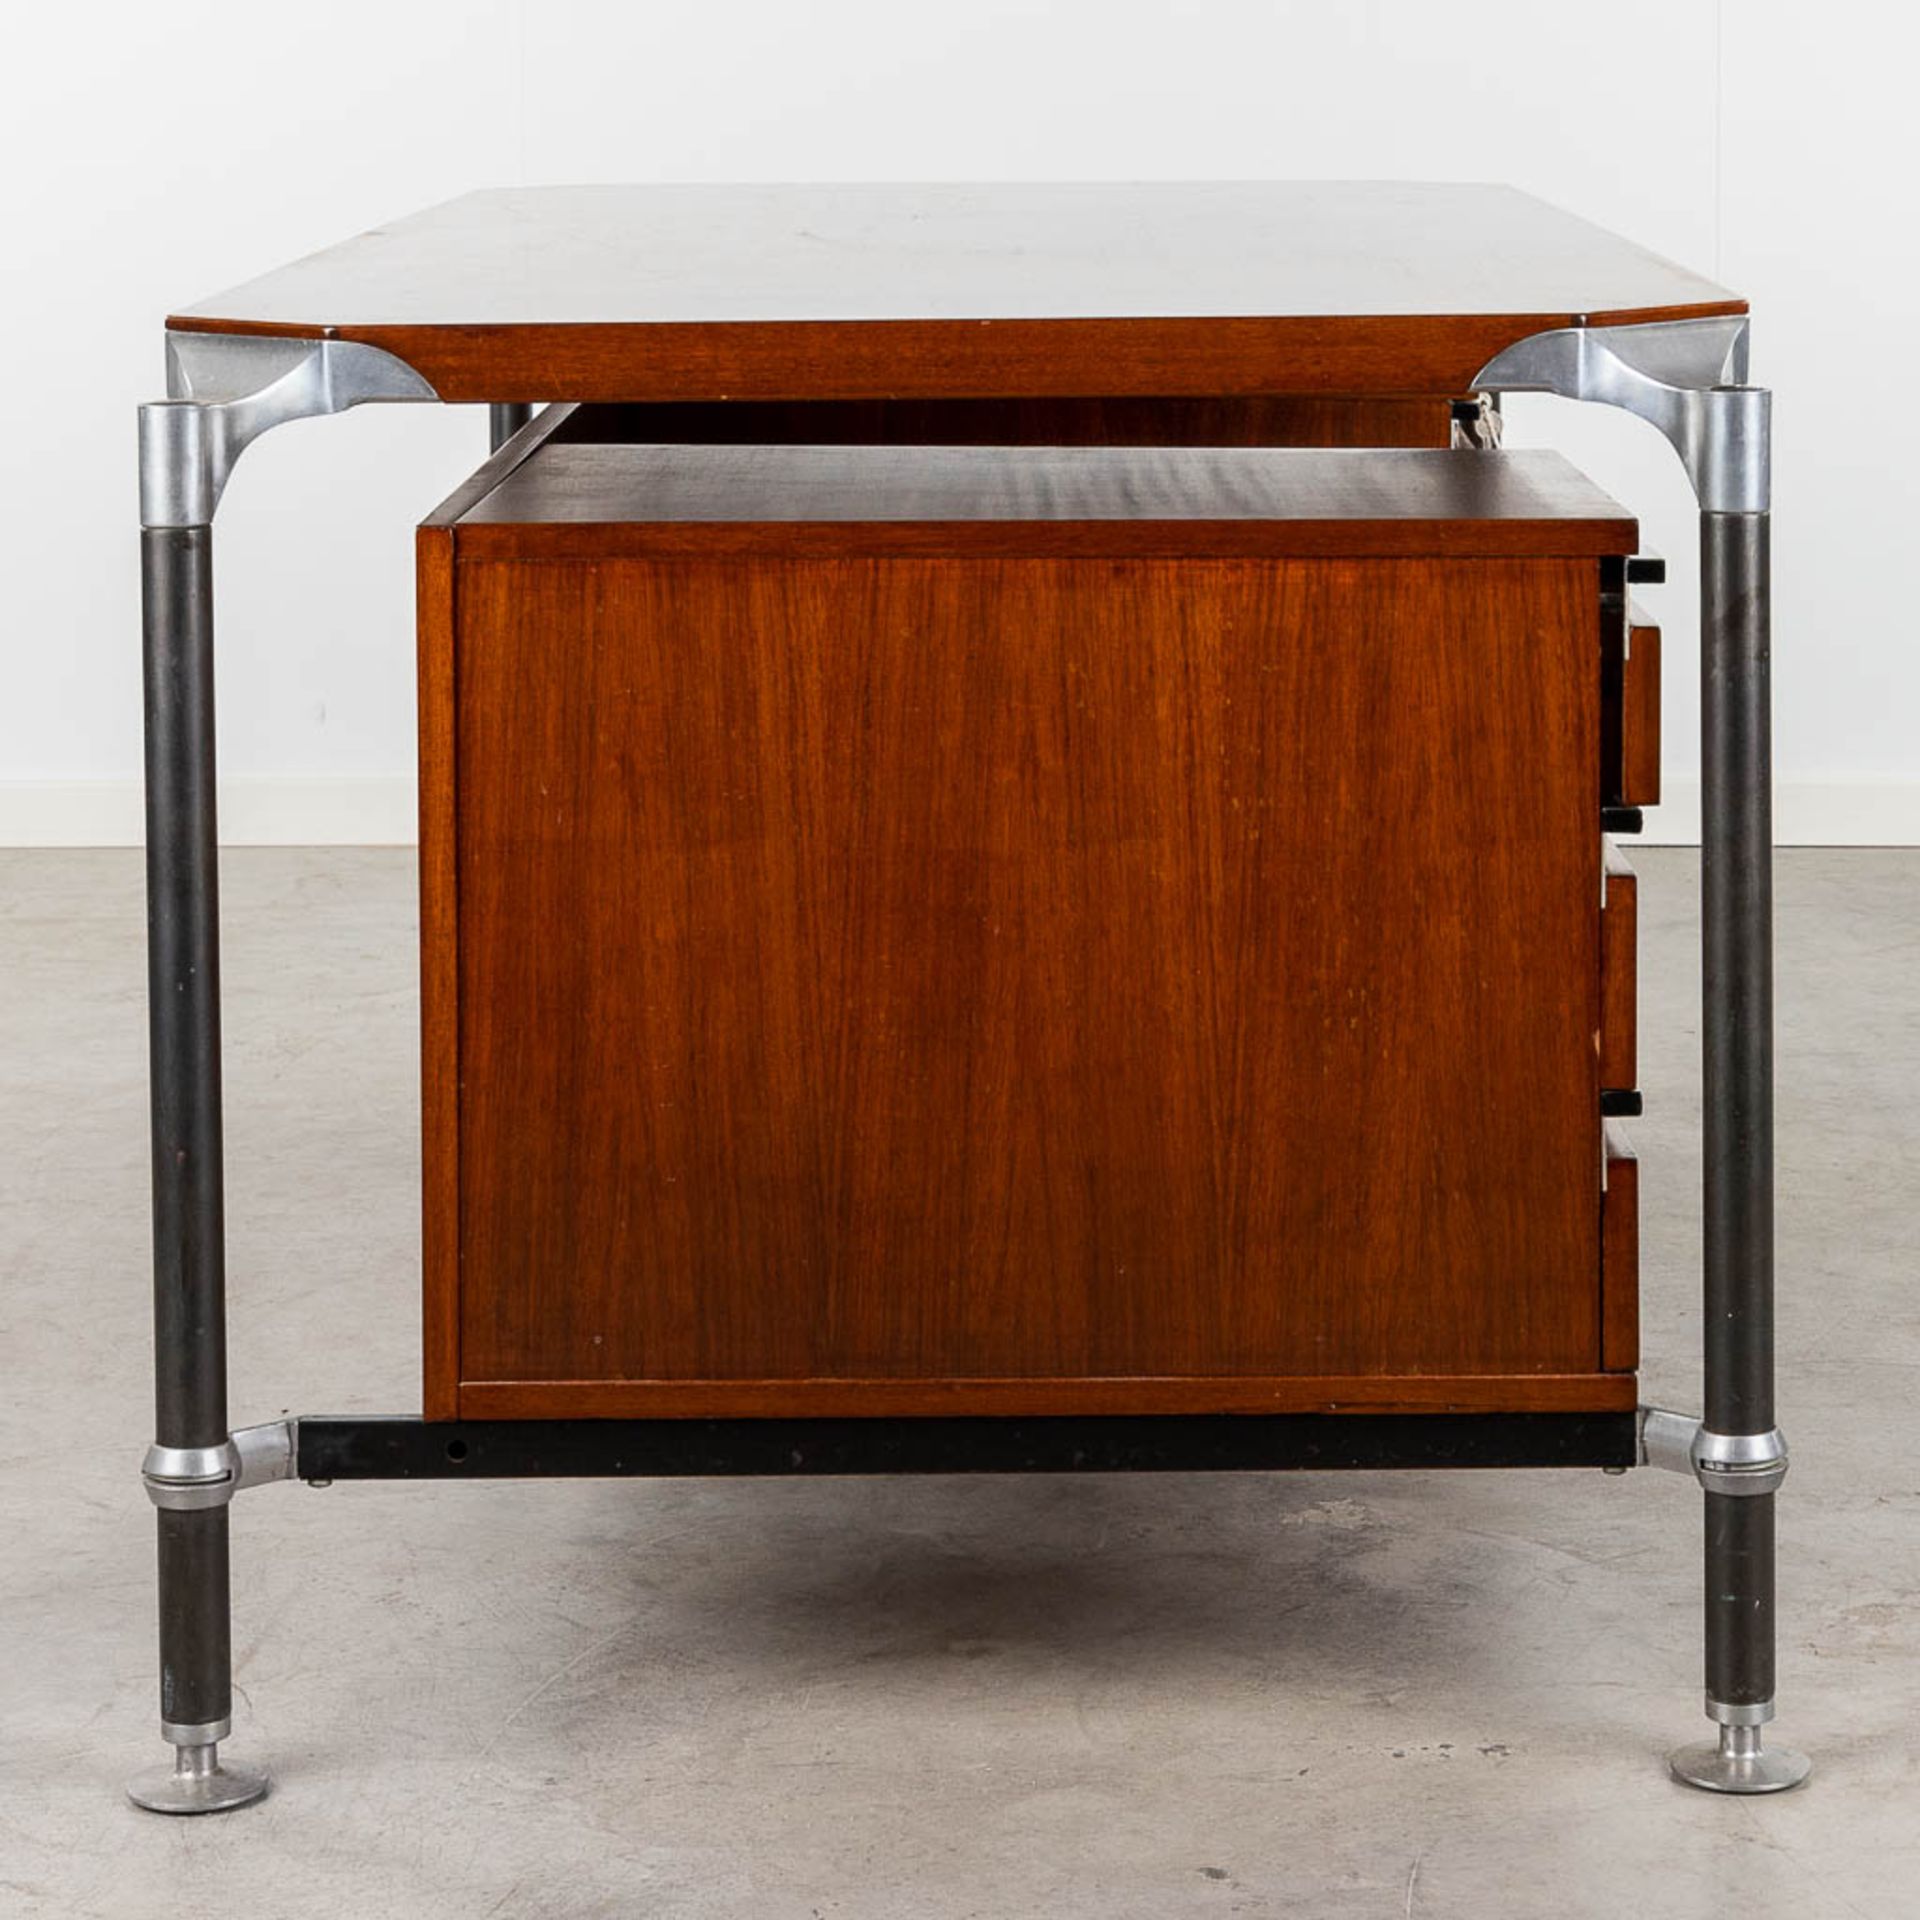 Ico PARISI (1916-1996) 'Desk' voor Mim Roma. (L: 80 x W: 160 x H: 73 cm) - Image 15 of 17